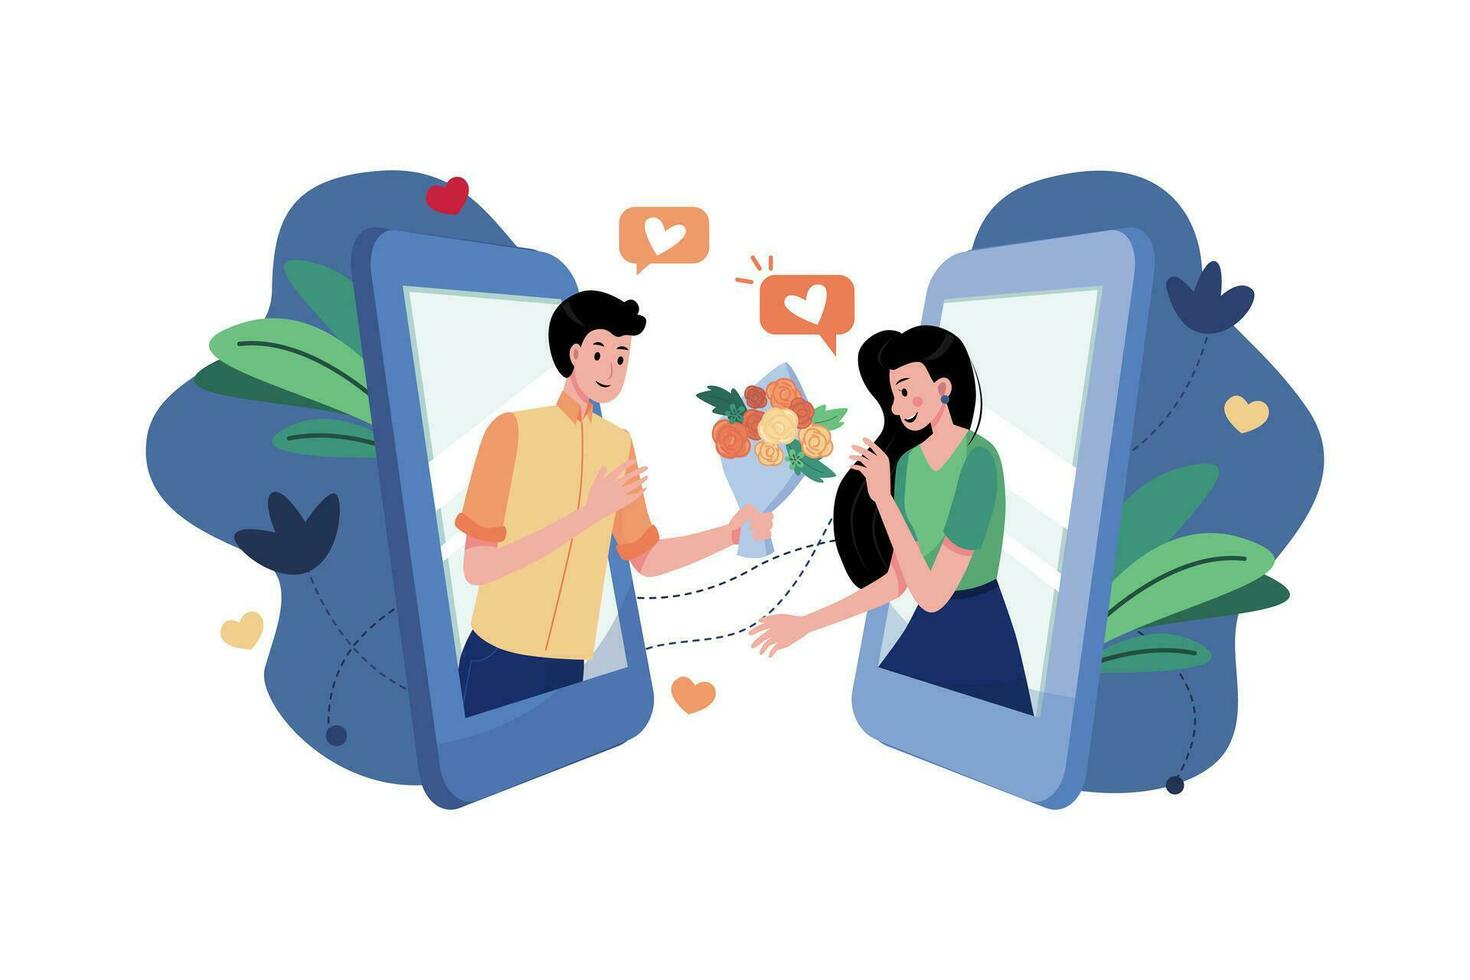 jongen geeft bloem aan vriendin via een online dating-app vector